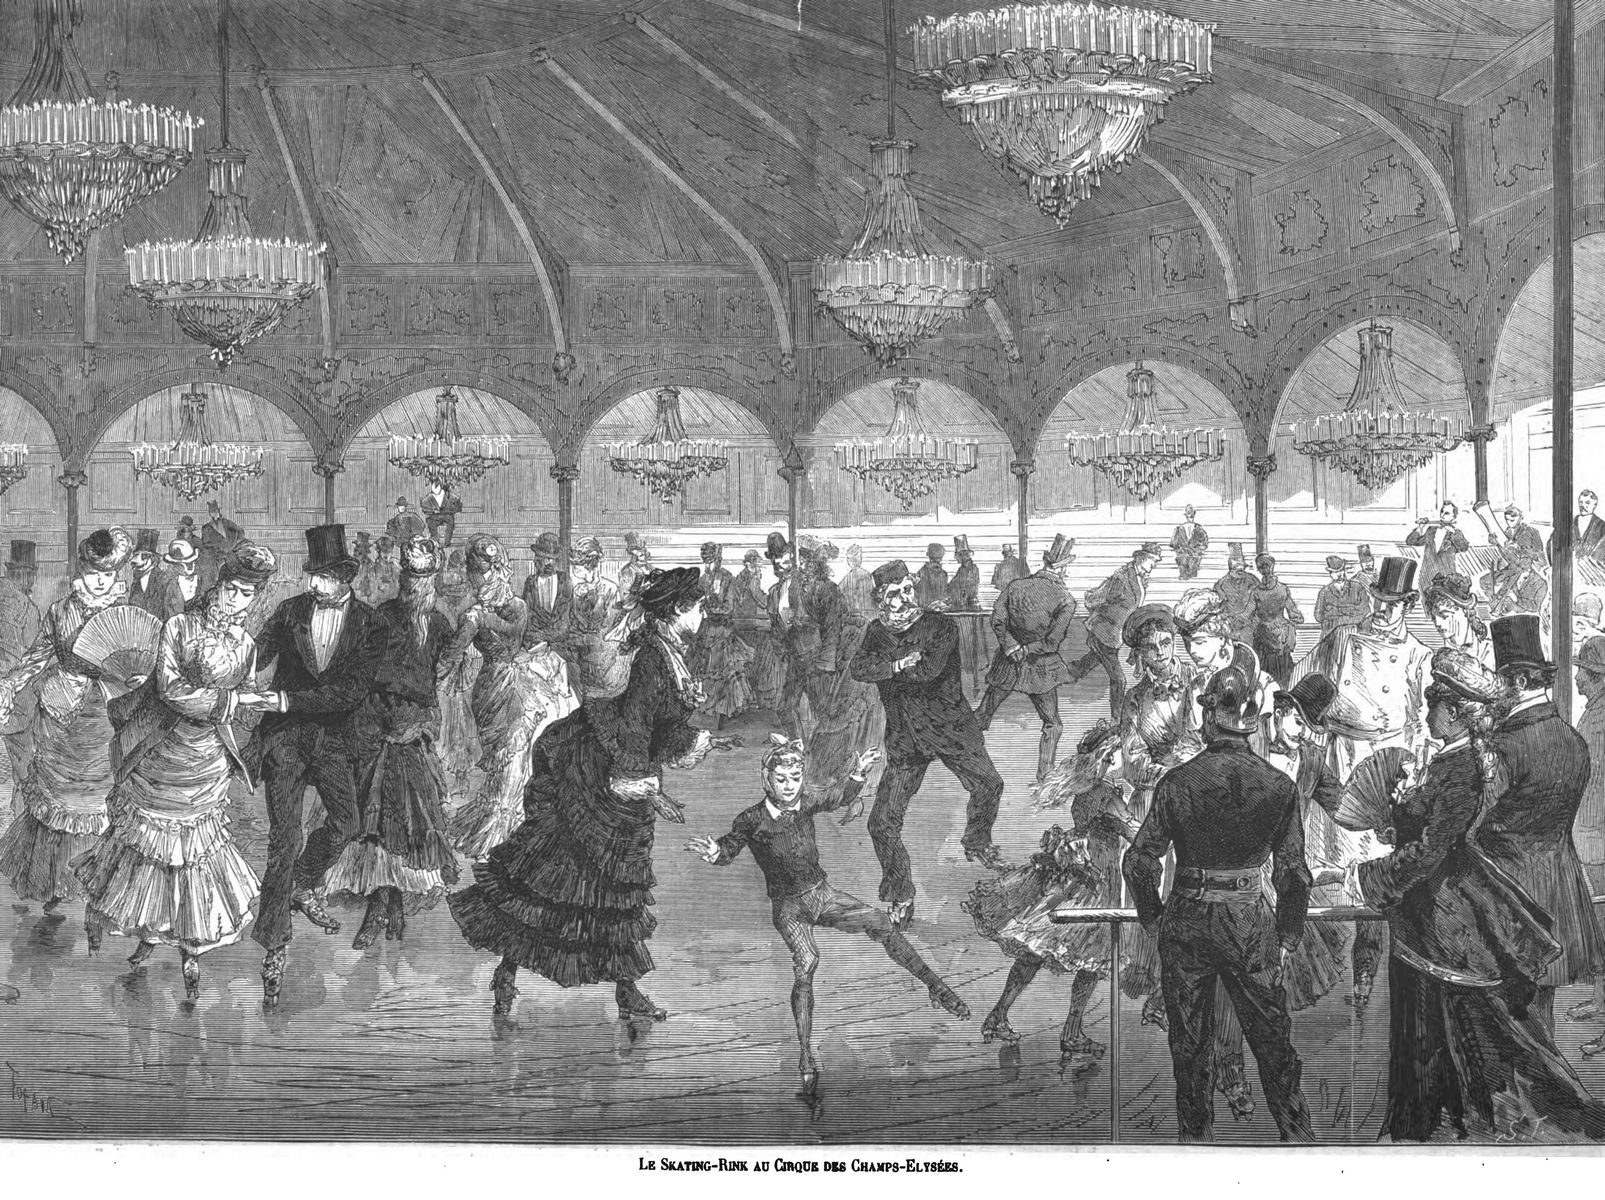 Le Skating-Kink au Cirque des Champs-Elysées. 1875